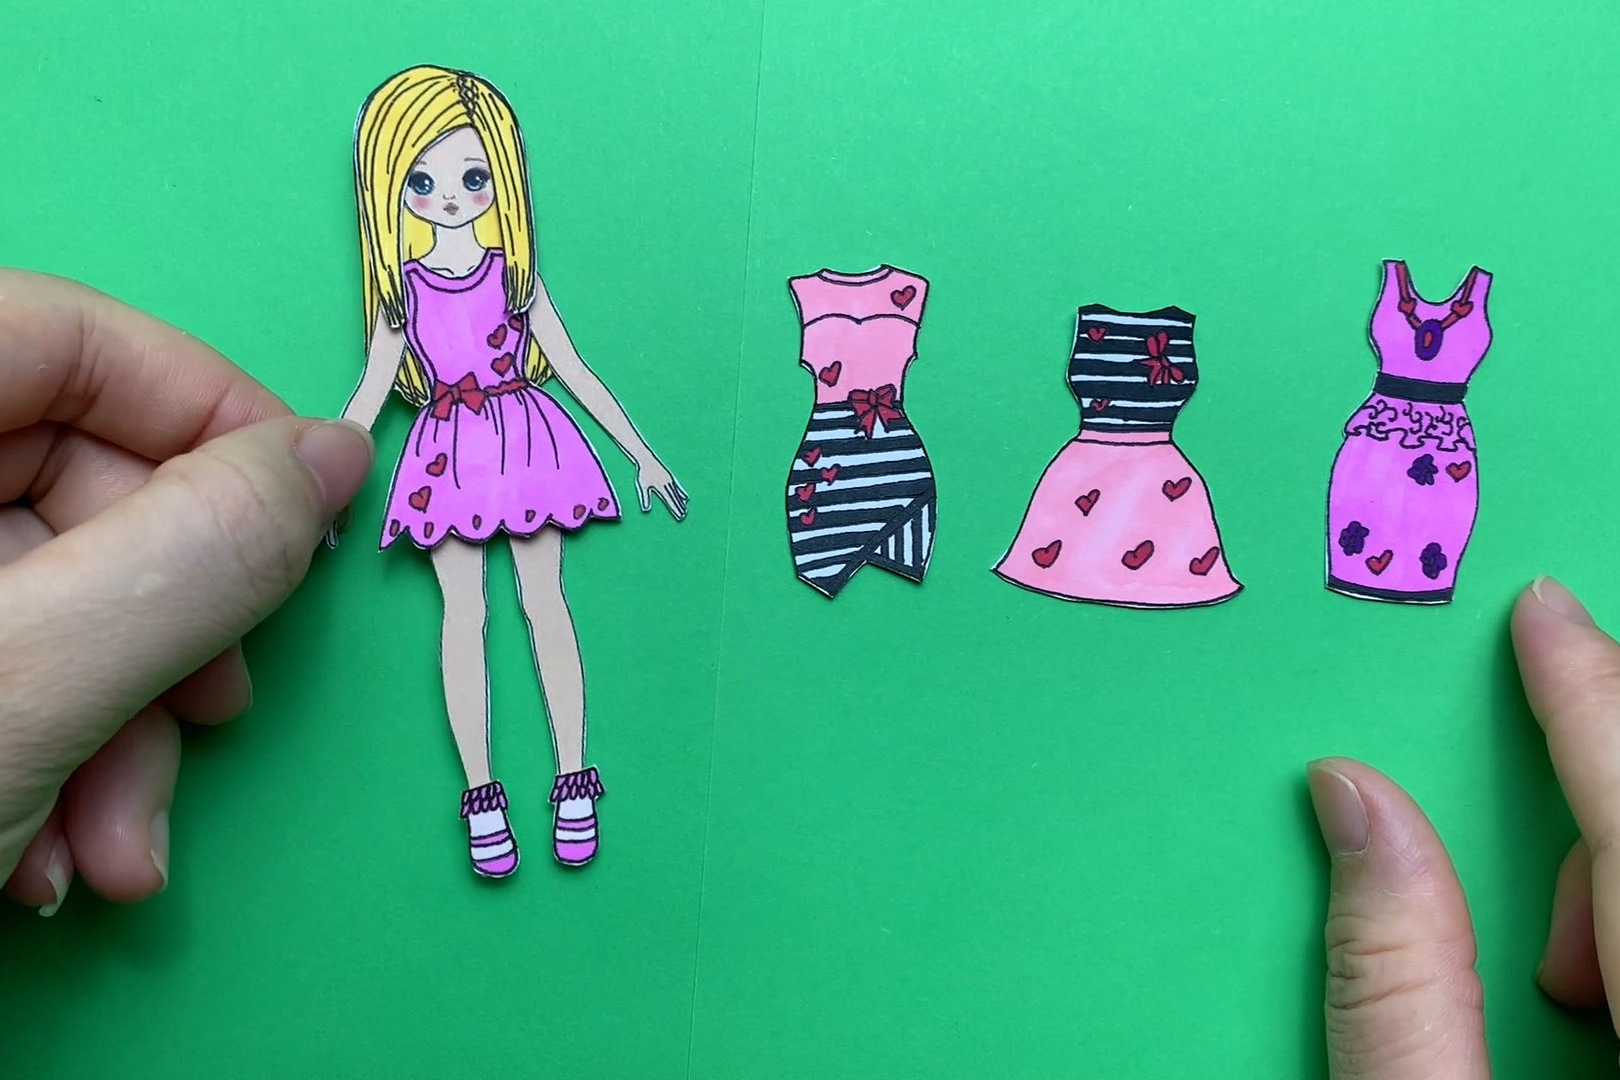 纸娃娃创意手工:给芭比制作了四条裙子,你喜欢包裙还是连衣裙呢